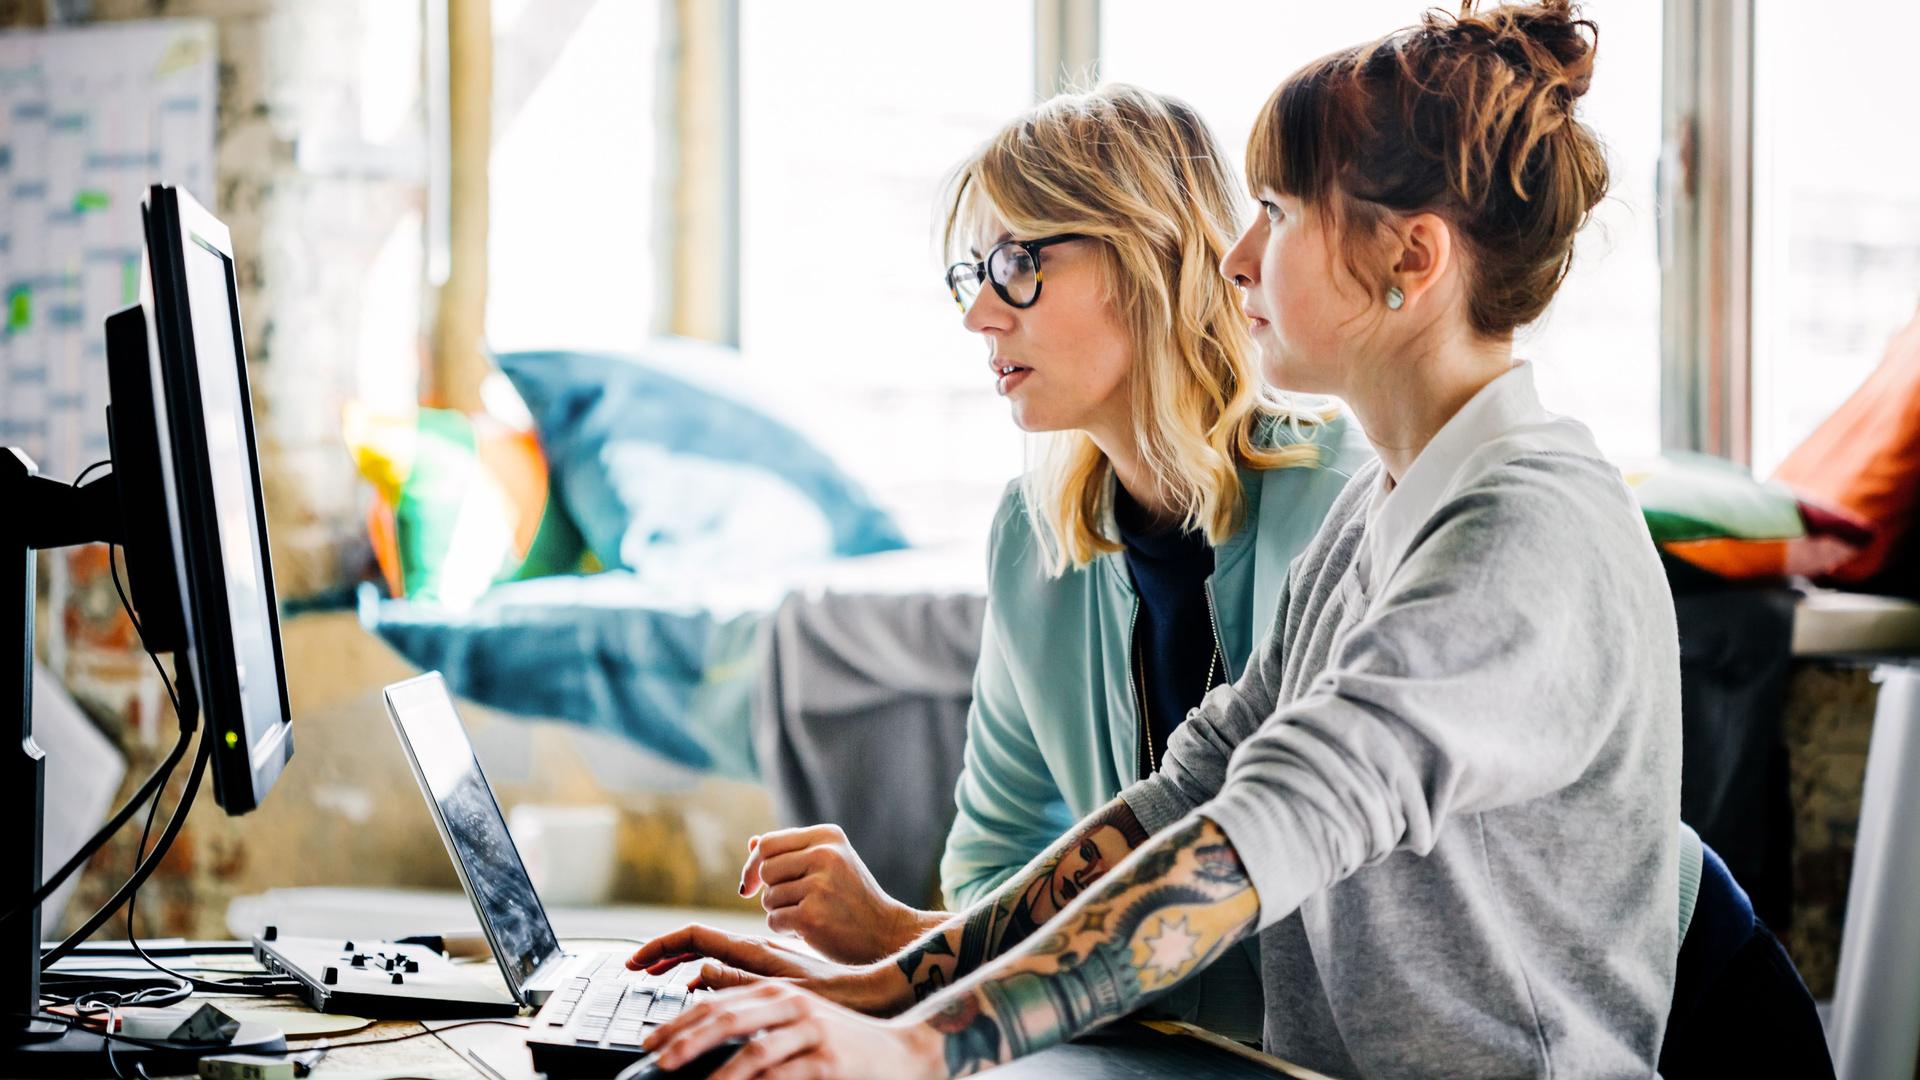 Zwei junge Frauen, die zusammen an einem Computer arbeiten.